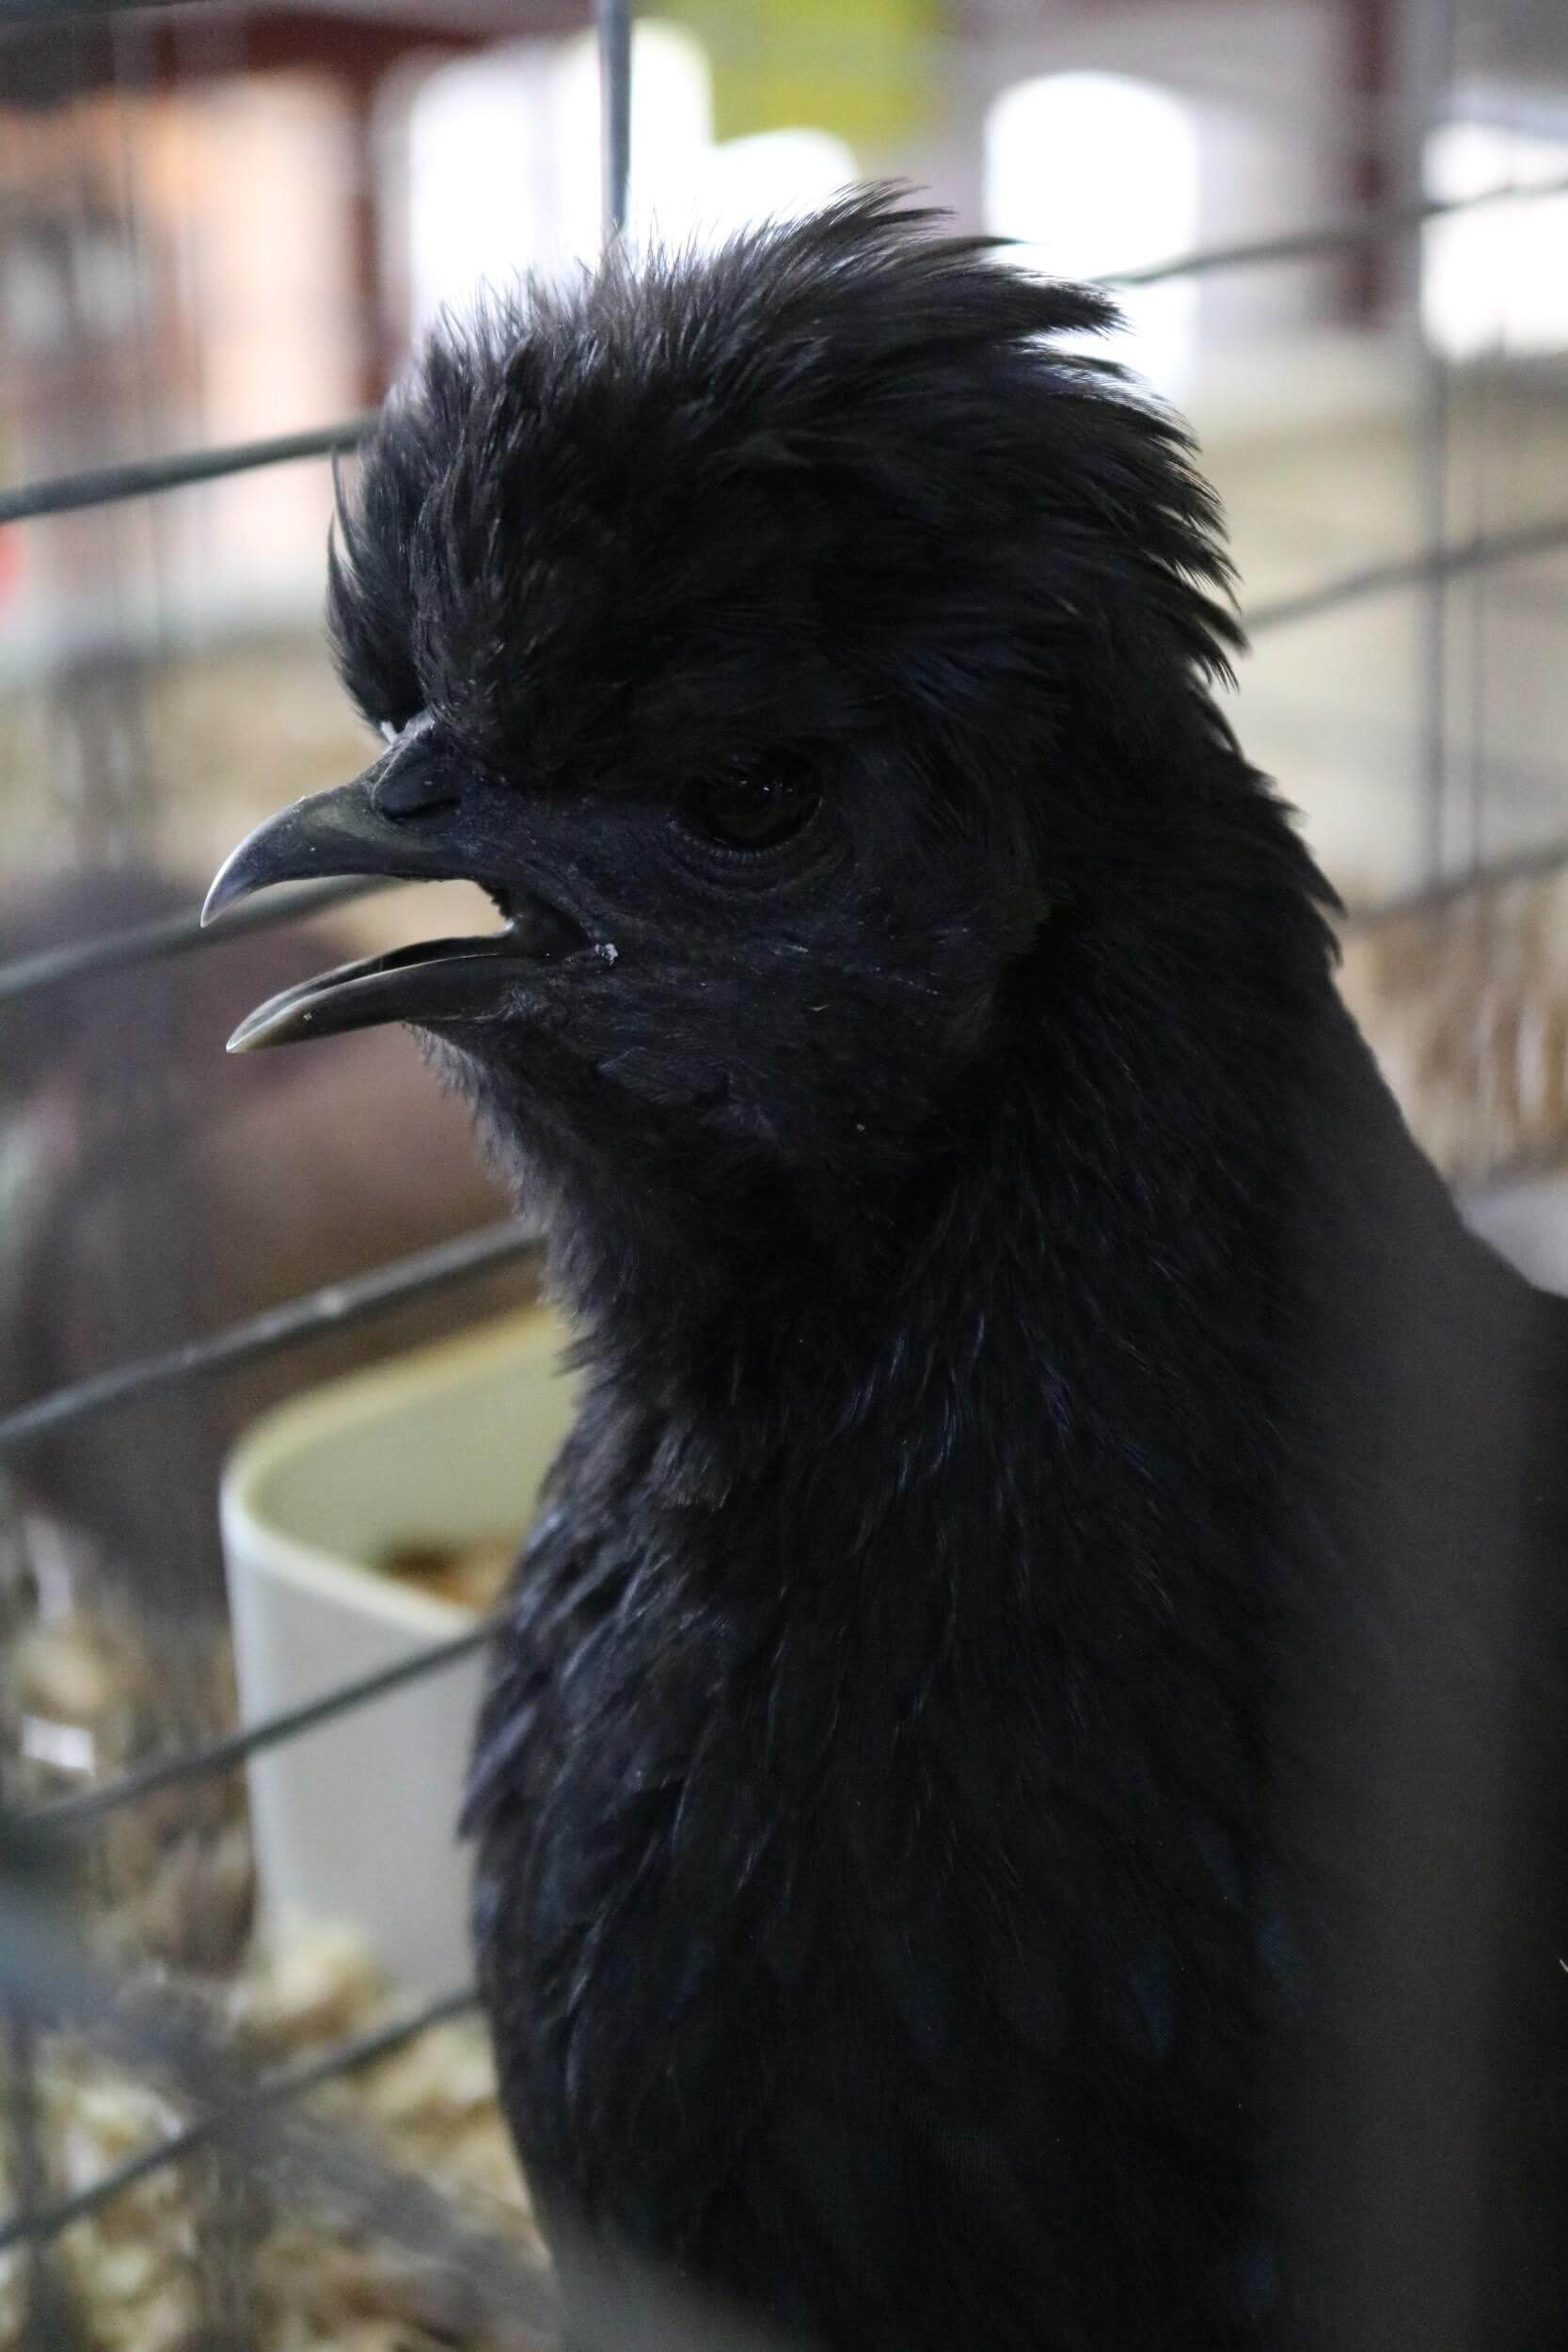 black chicken grant county fair, explore washington state